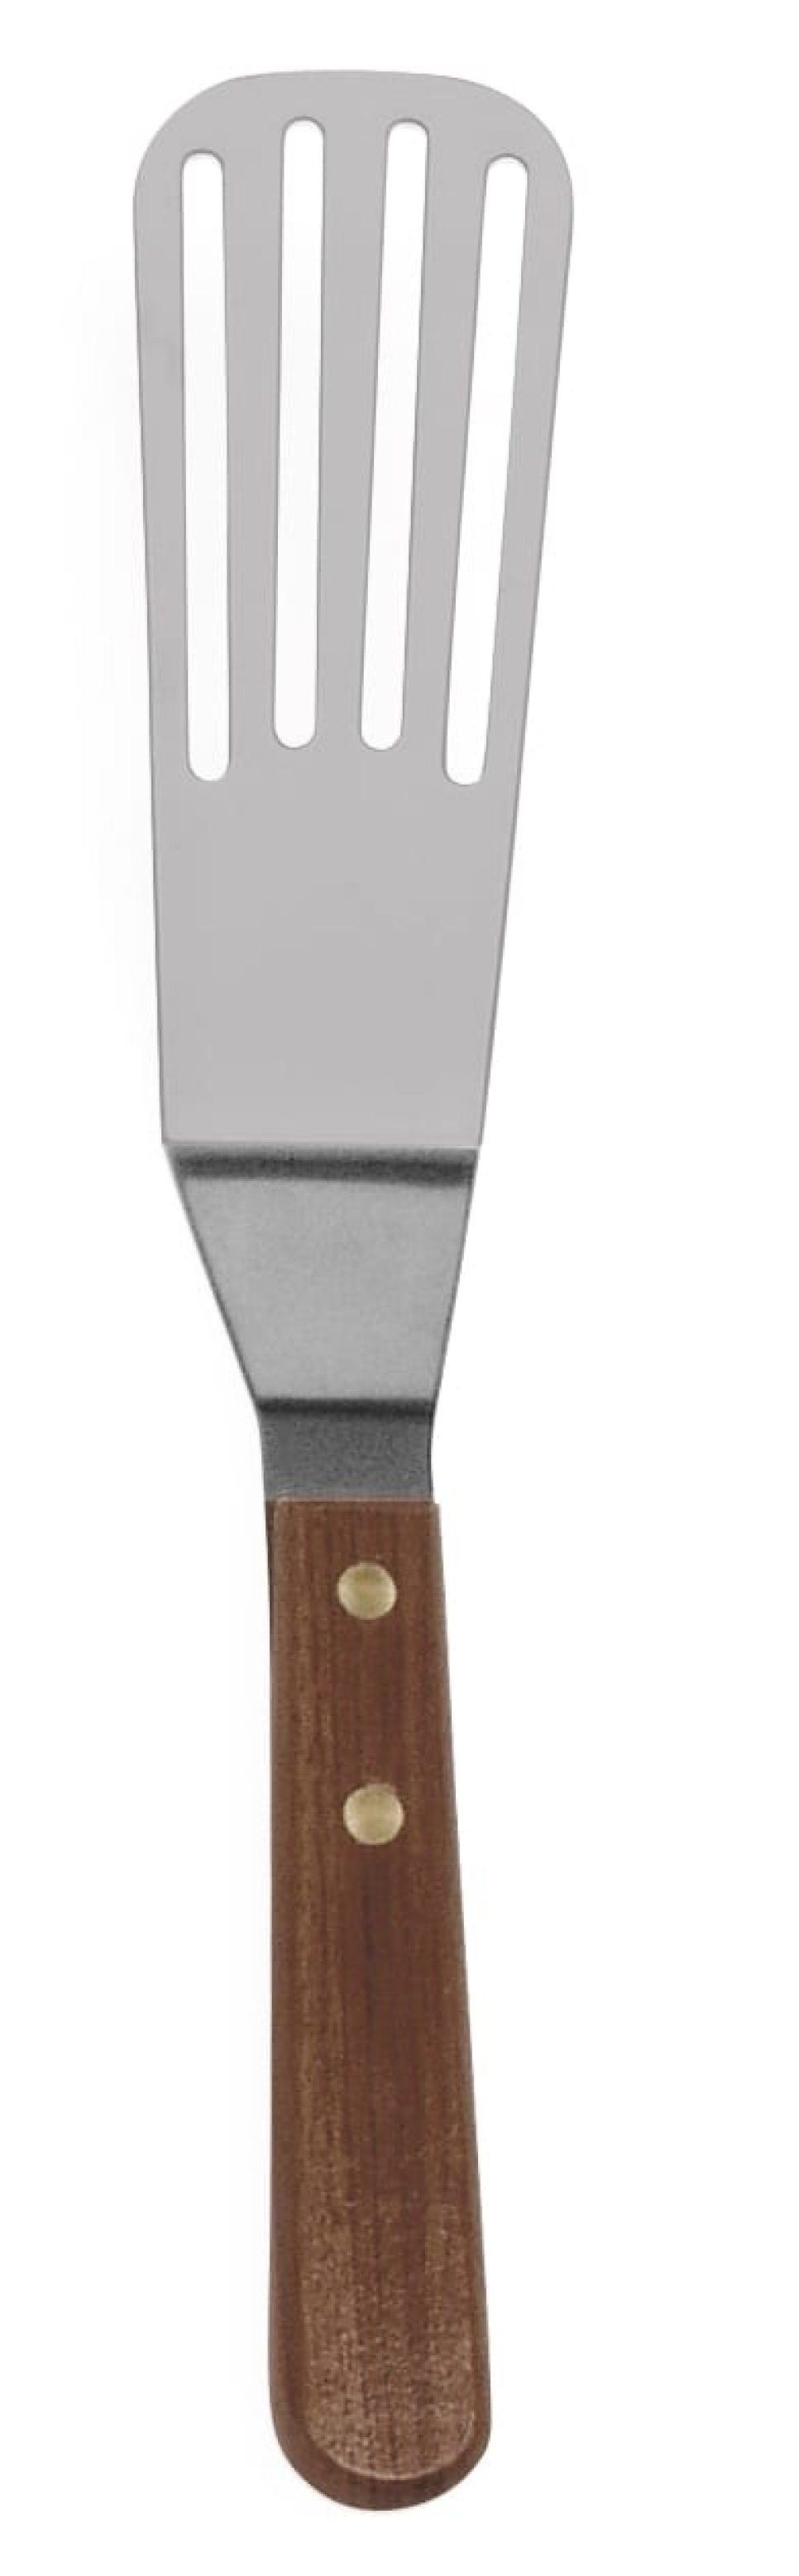 Stekespade perforert, 28 cm - Exxent i gruppen Matlaging / Kjøkkenutstyr / Spader og skraper hos The Kitchen Lab (1071-10164)